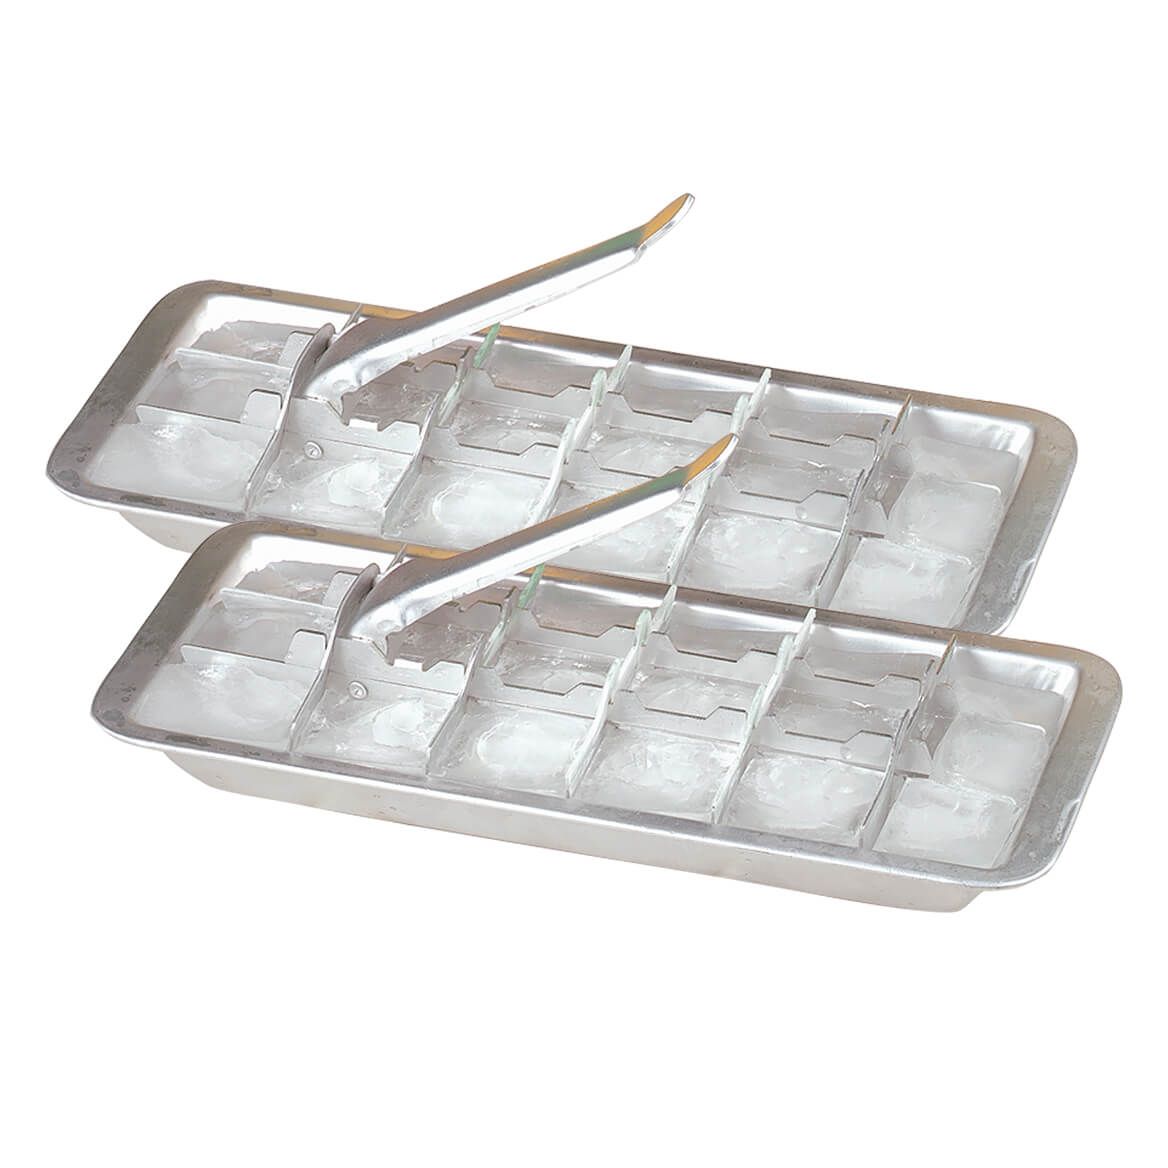 Aluminum Ice Cube Trays, Set of 2 + '-' + 367113